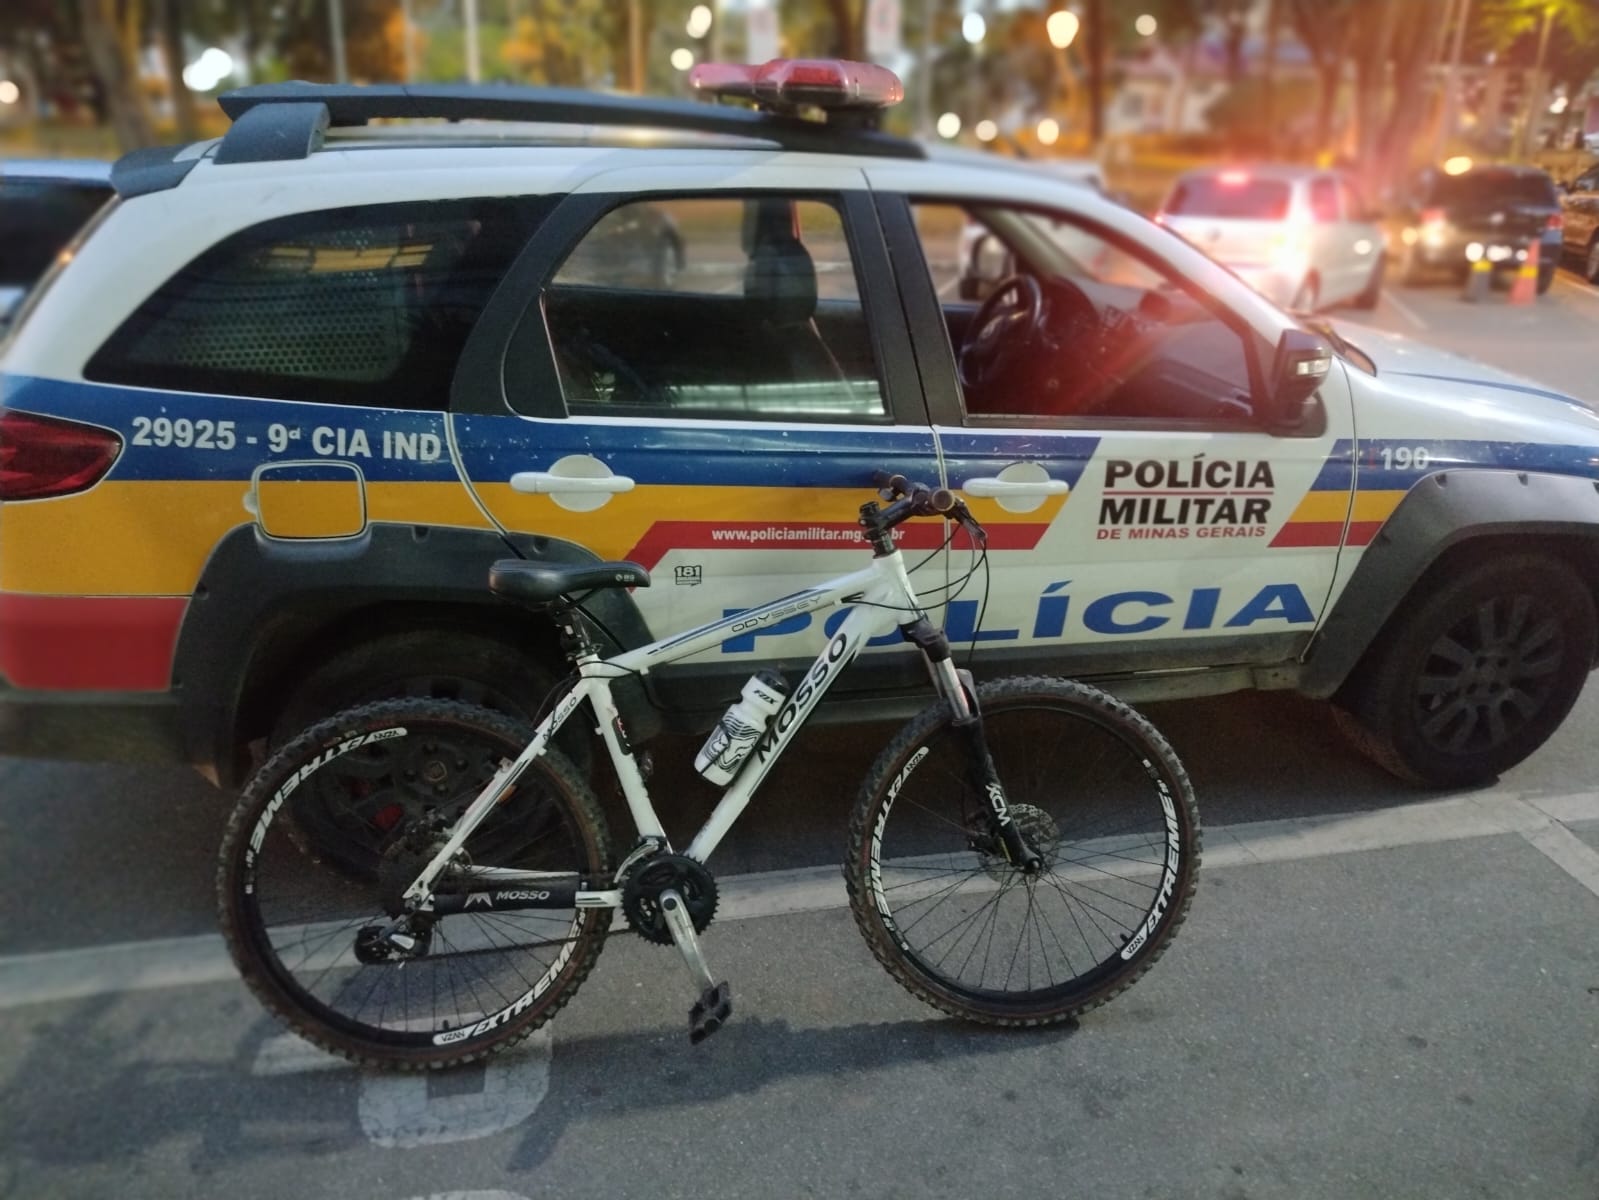 Furto de bicicletas registra mais três prisões em Itaúna e delegado alerta ciclistas: “redobrem a atenção”